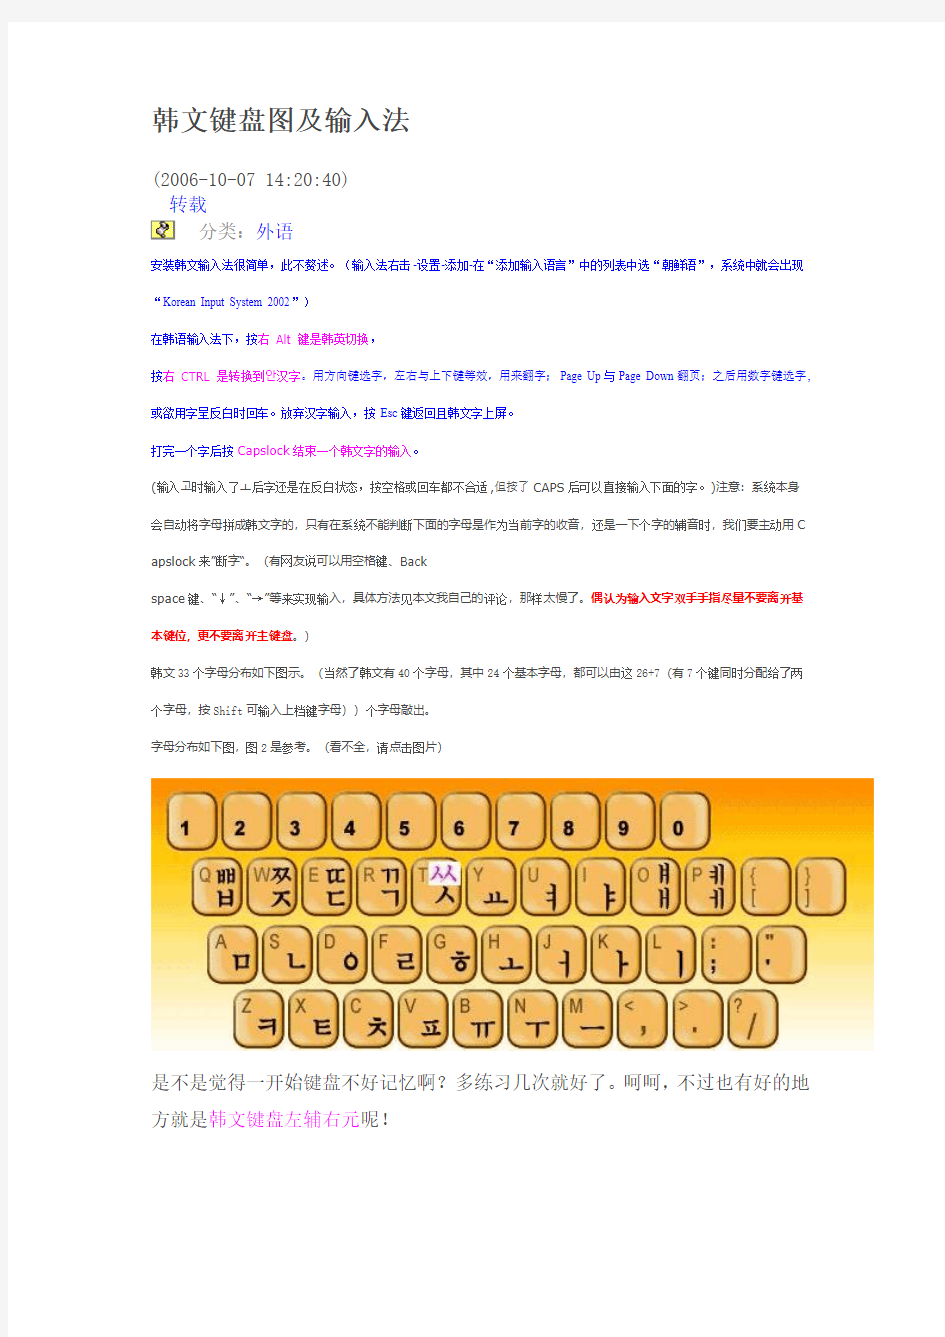 韩文键盘图及输入法